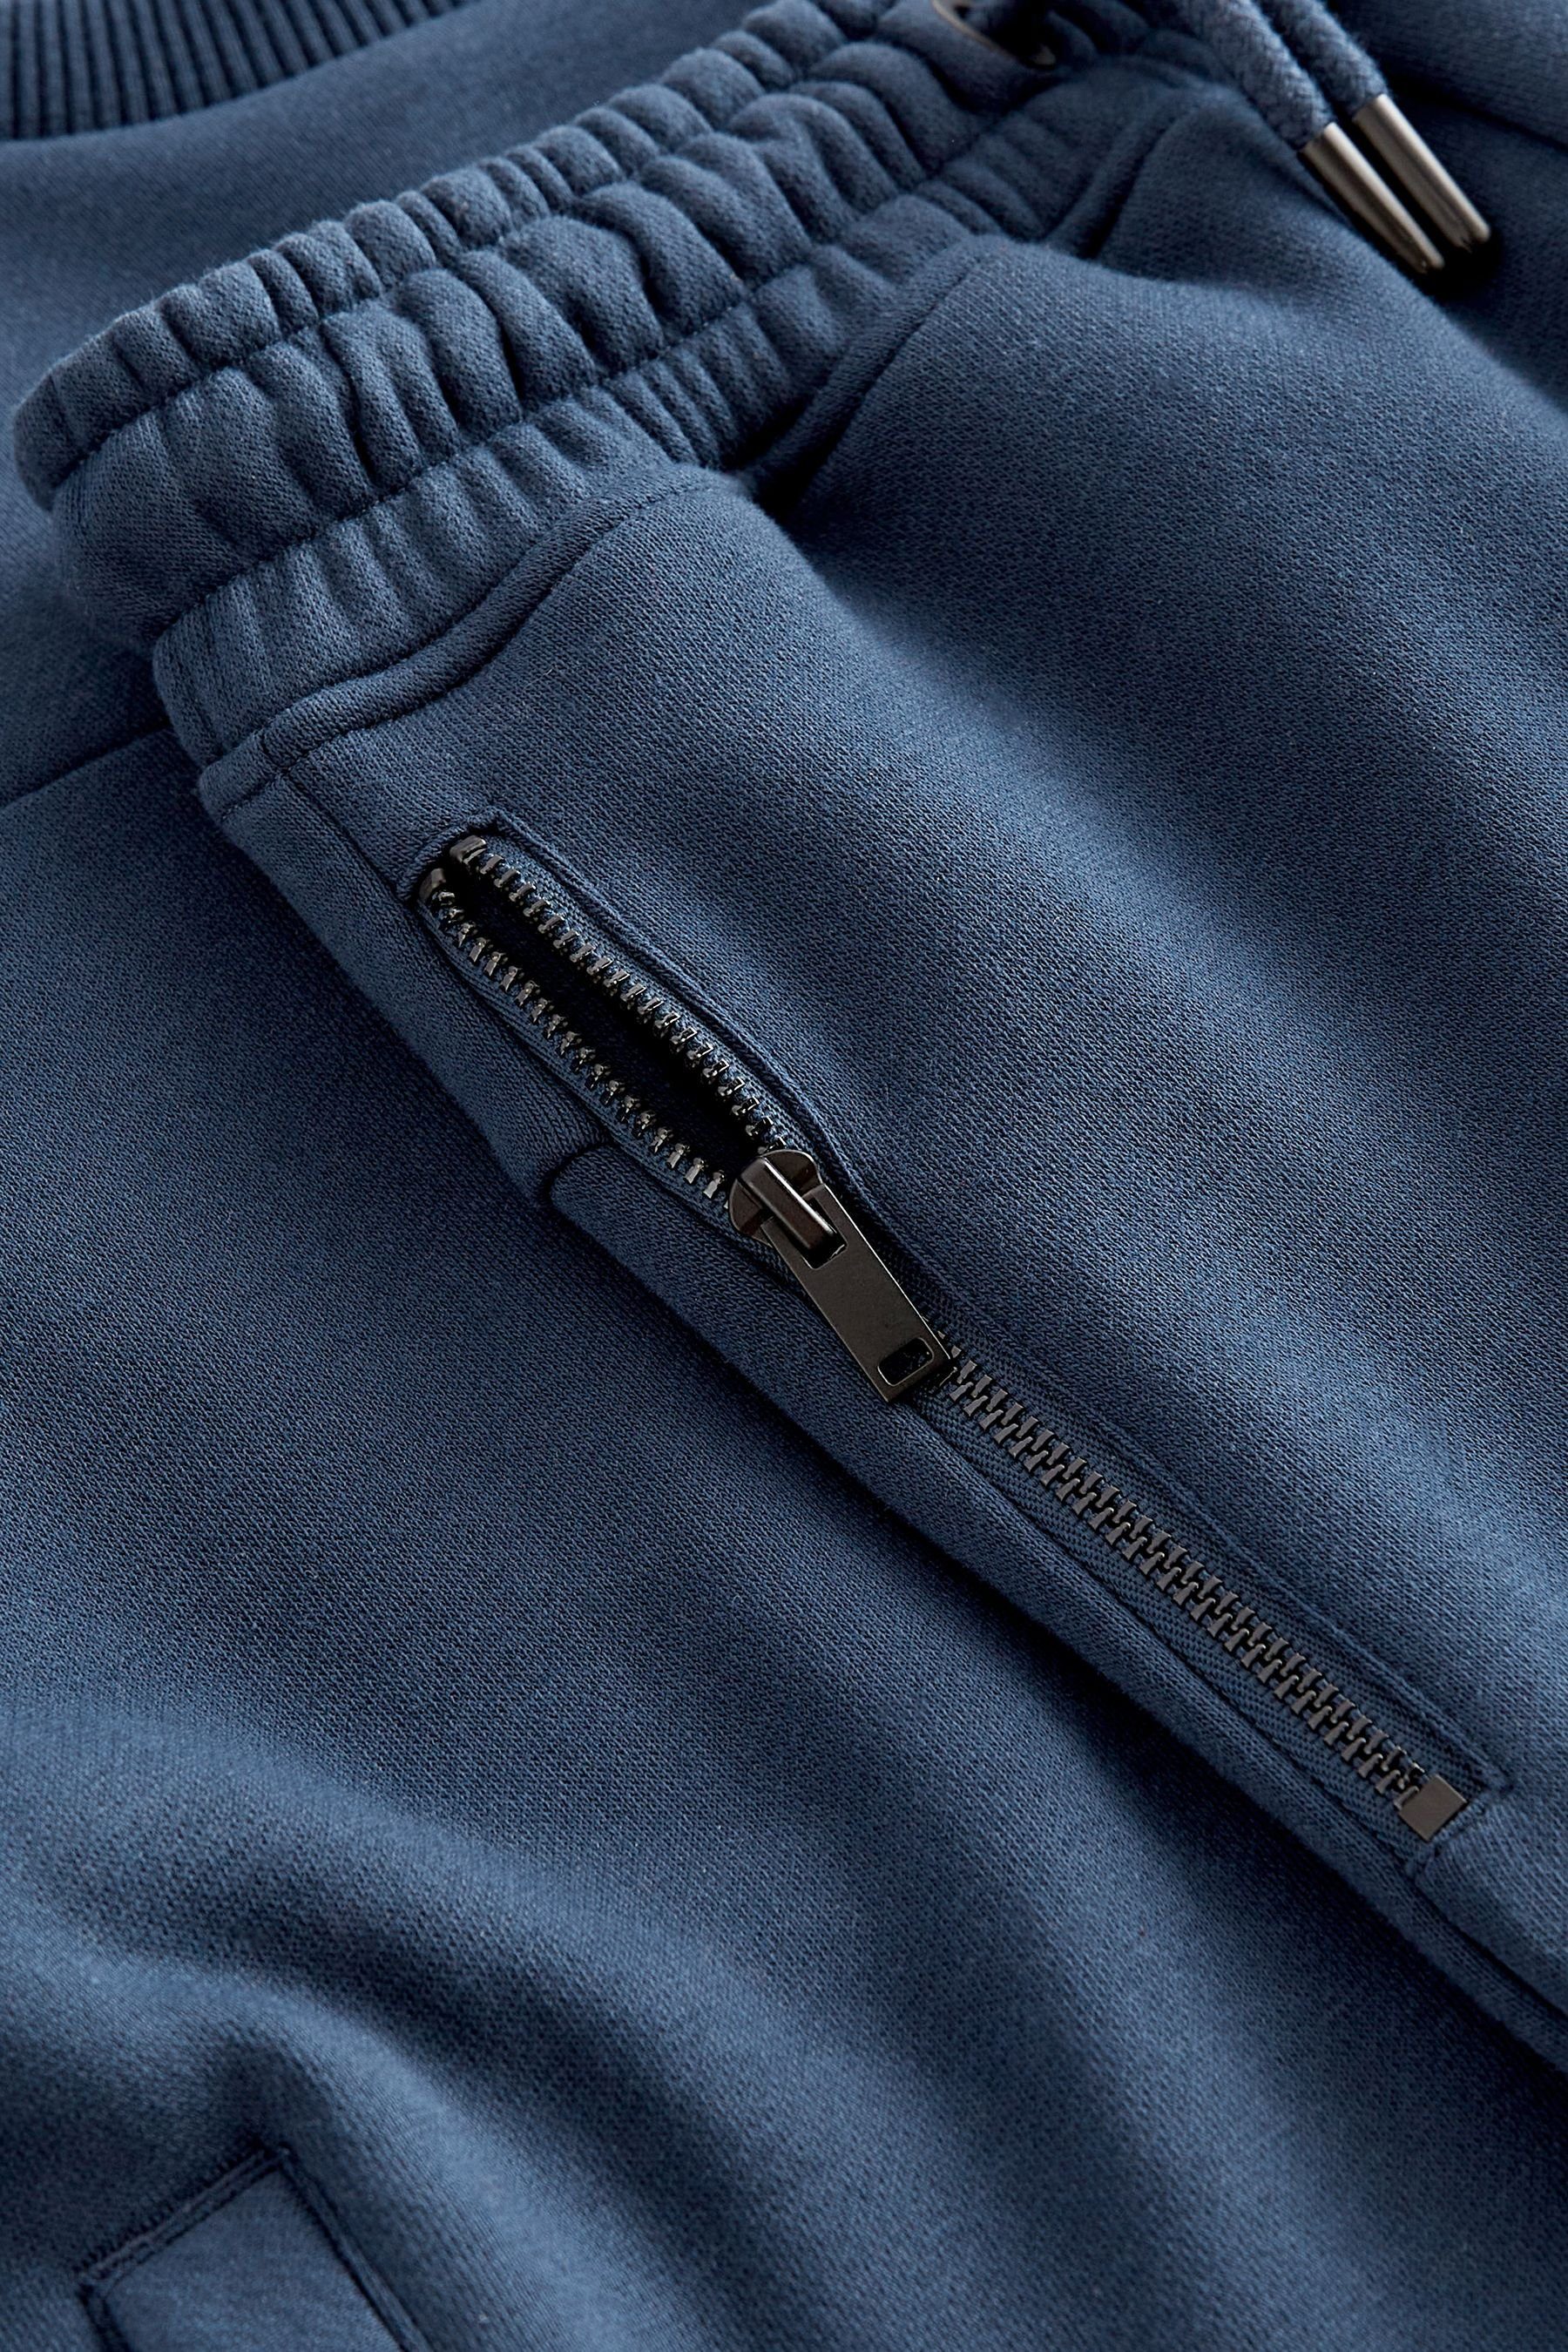 Rundhalsausschnitt Sweatanzug Set (2-tlg) - Blue Utility-Sweatshirt mit Next